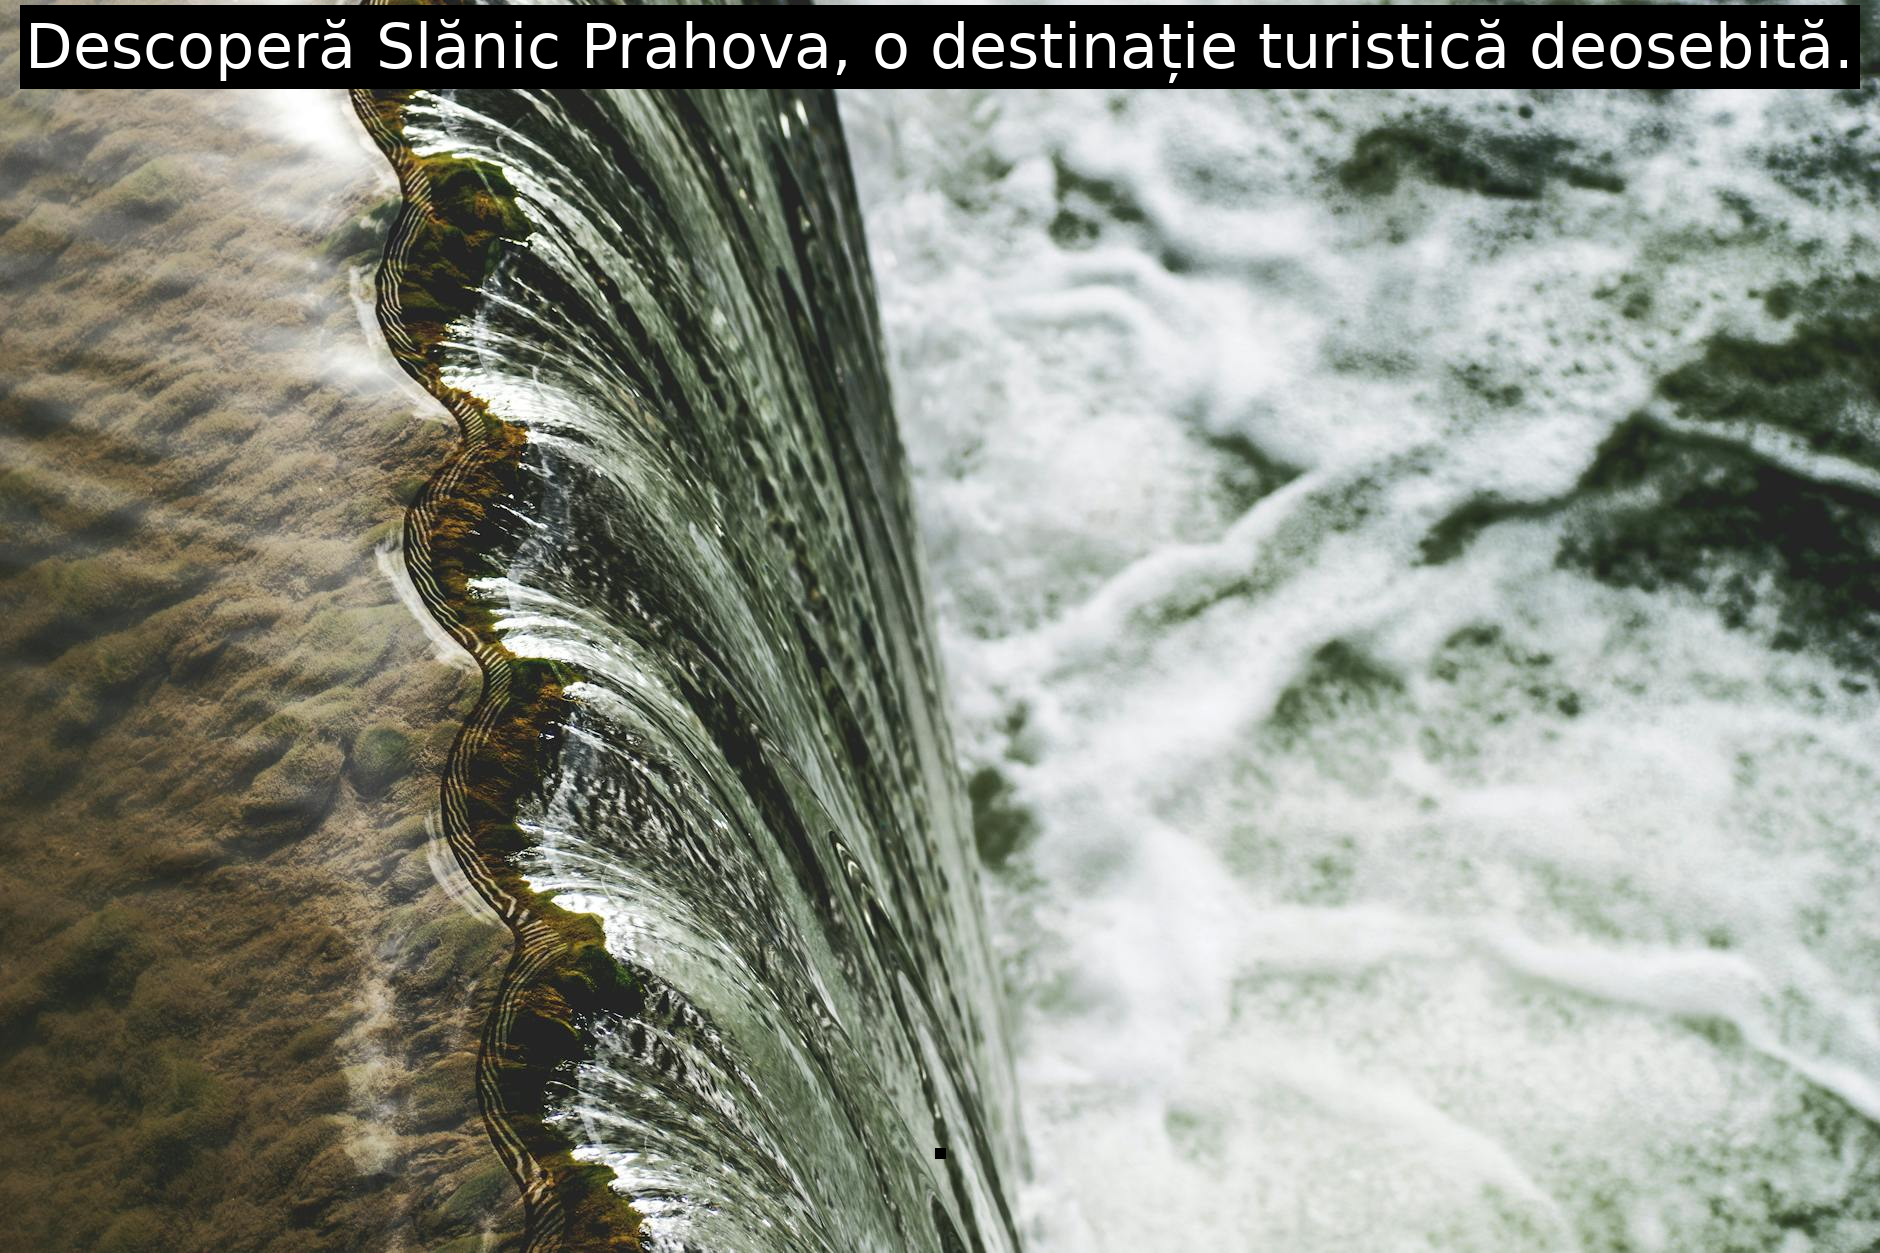 Descoperă Slănic Prahova, o destinație turistică deosebită.